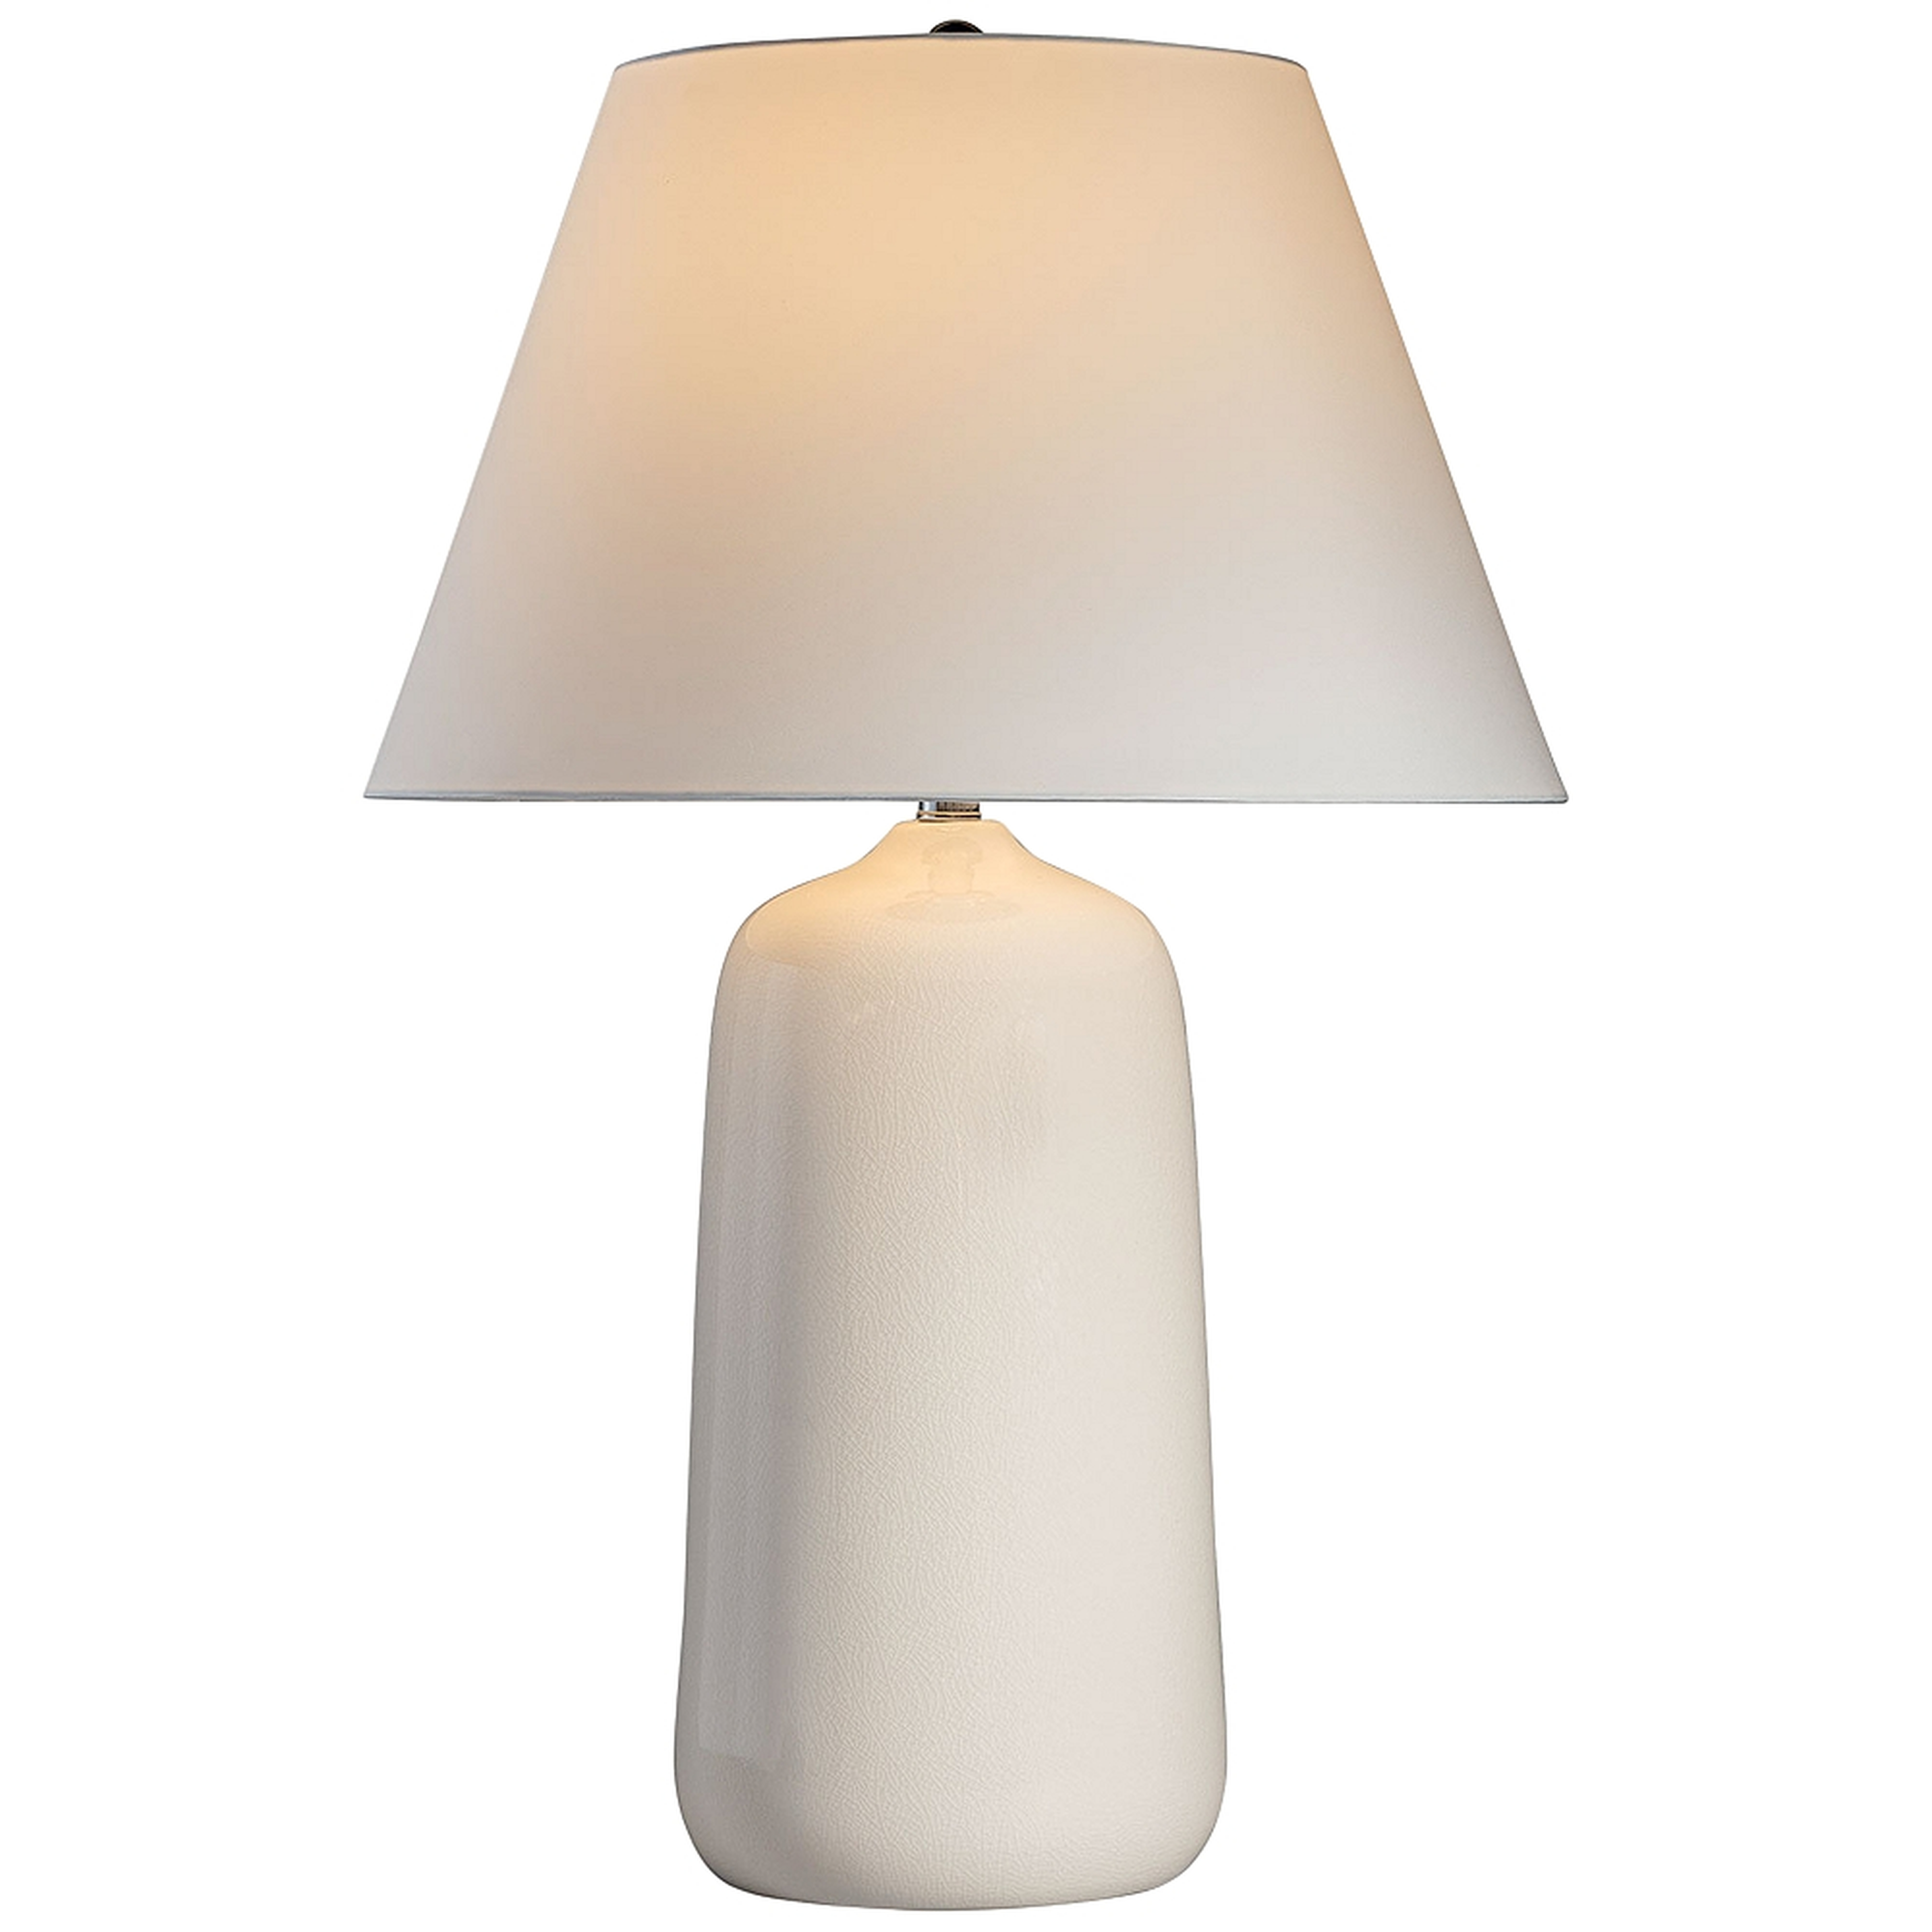 Port 68 Thomas Cream Crackle Porcelain Table Lamp - Style # 99K53 - Lamps Plus